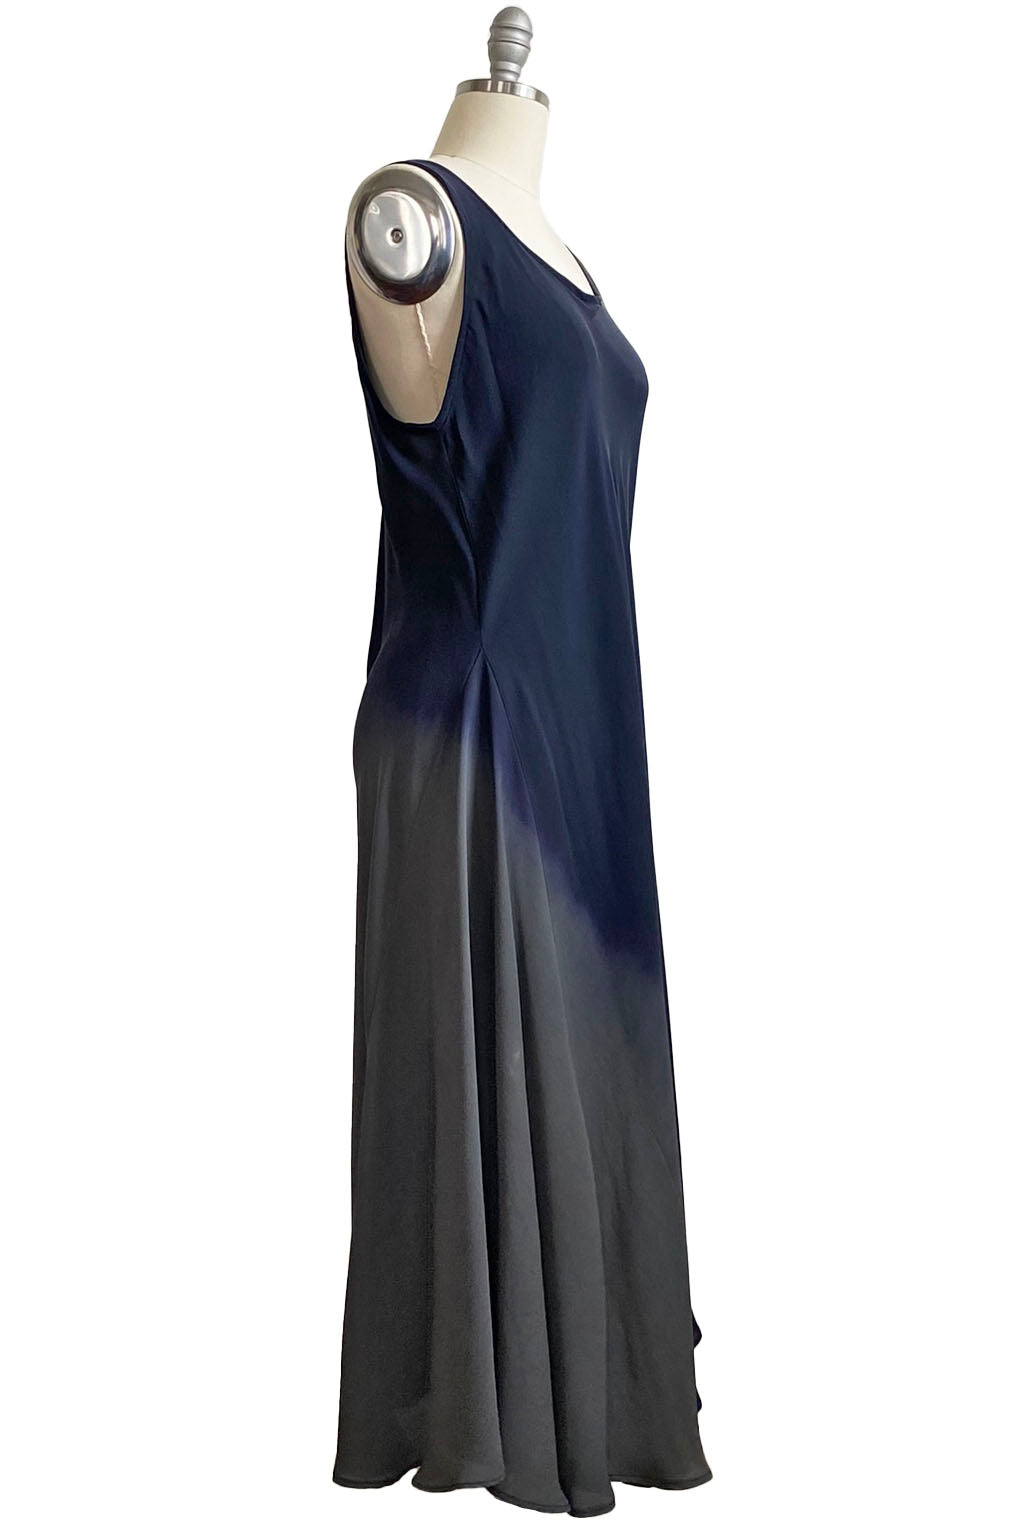 Fan Dress in Silk Georgette - Navy & Grey Ombre - L